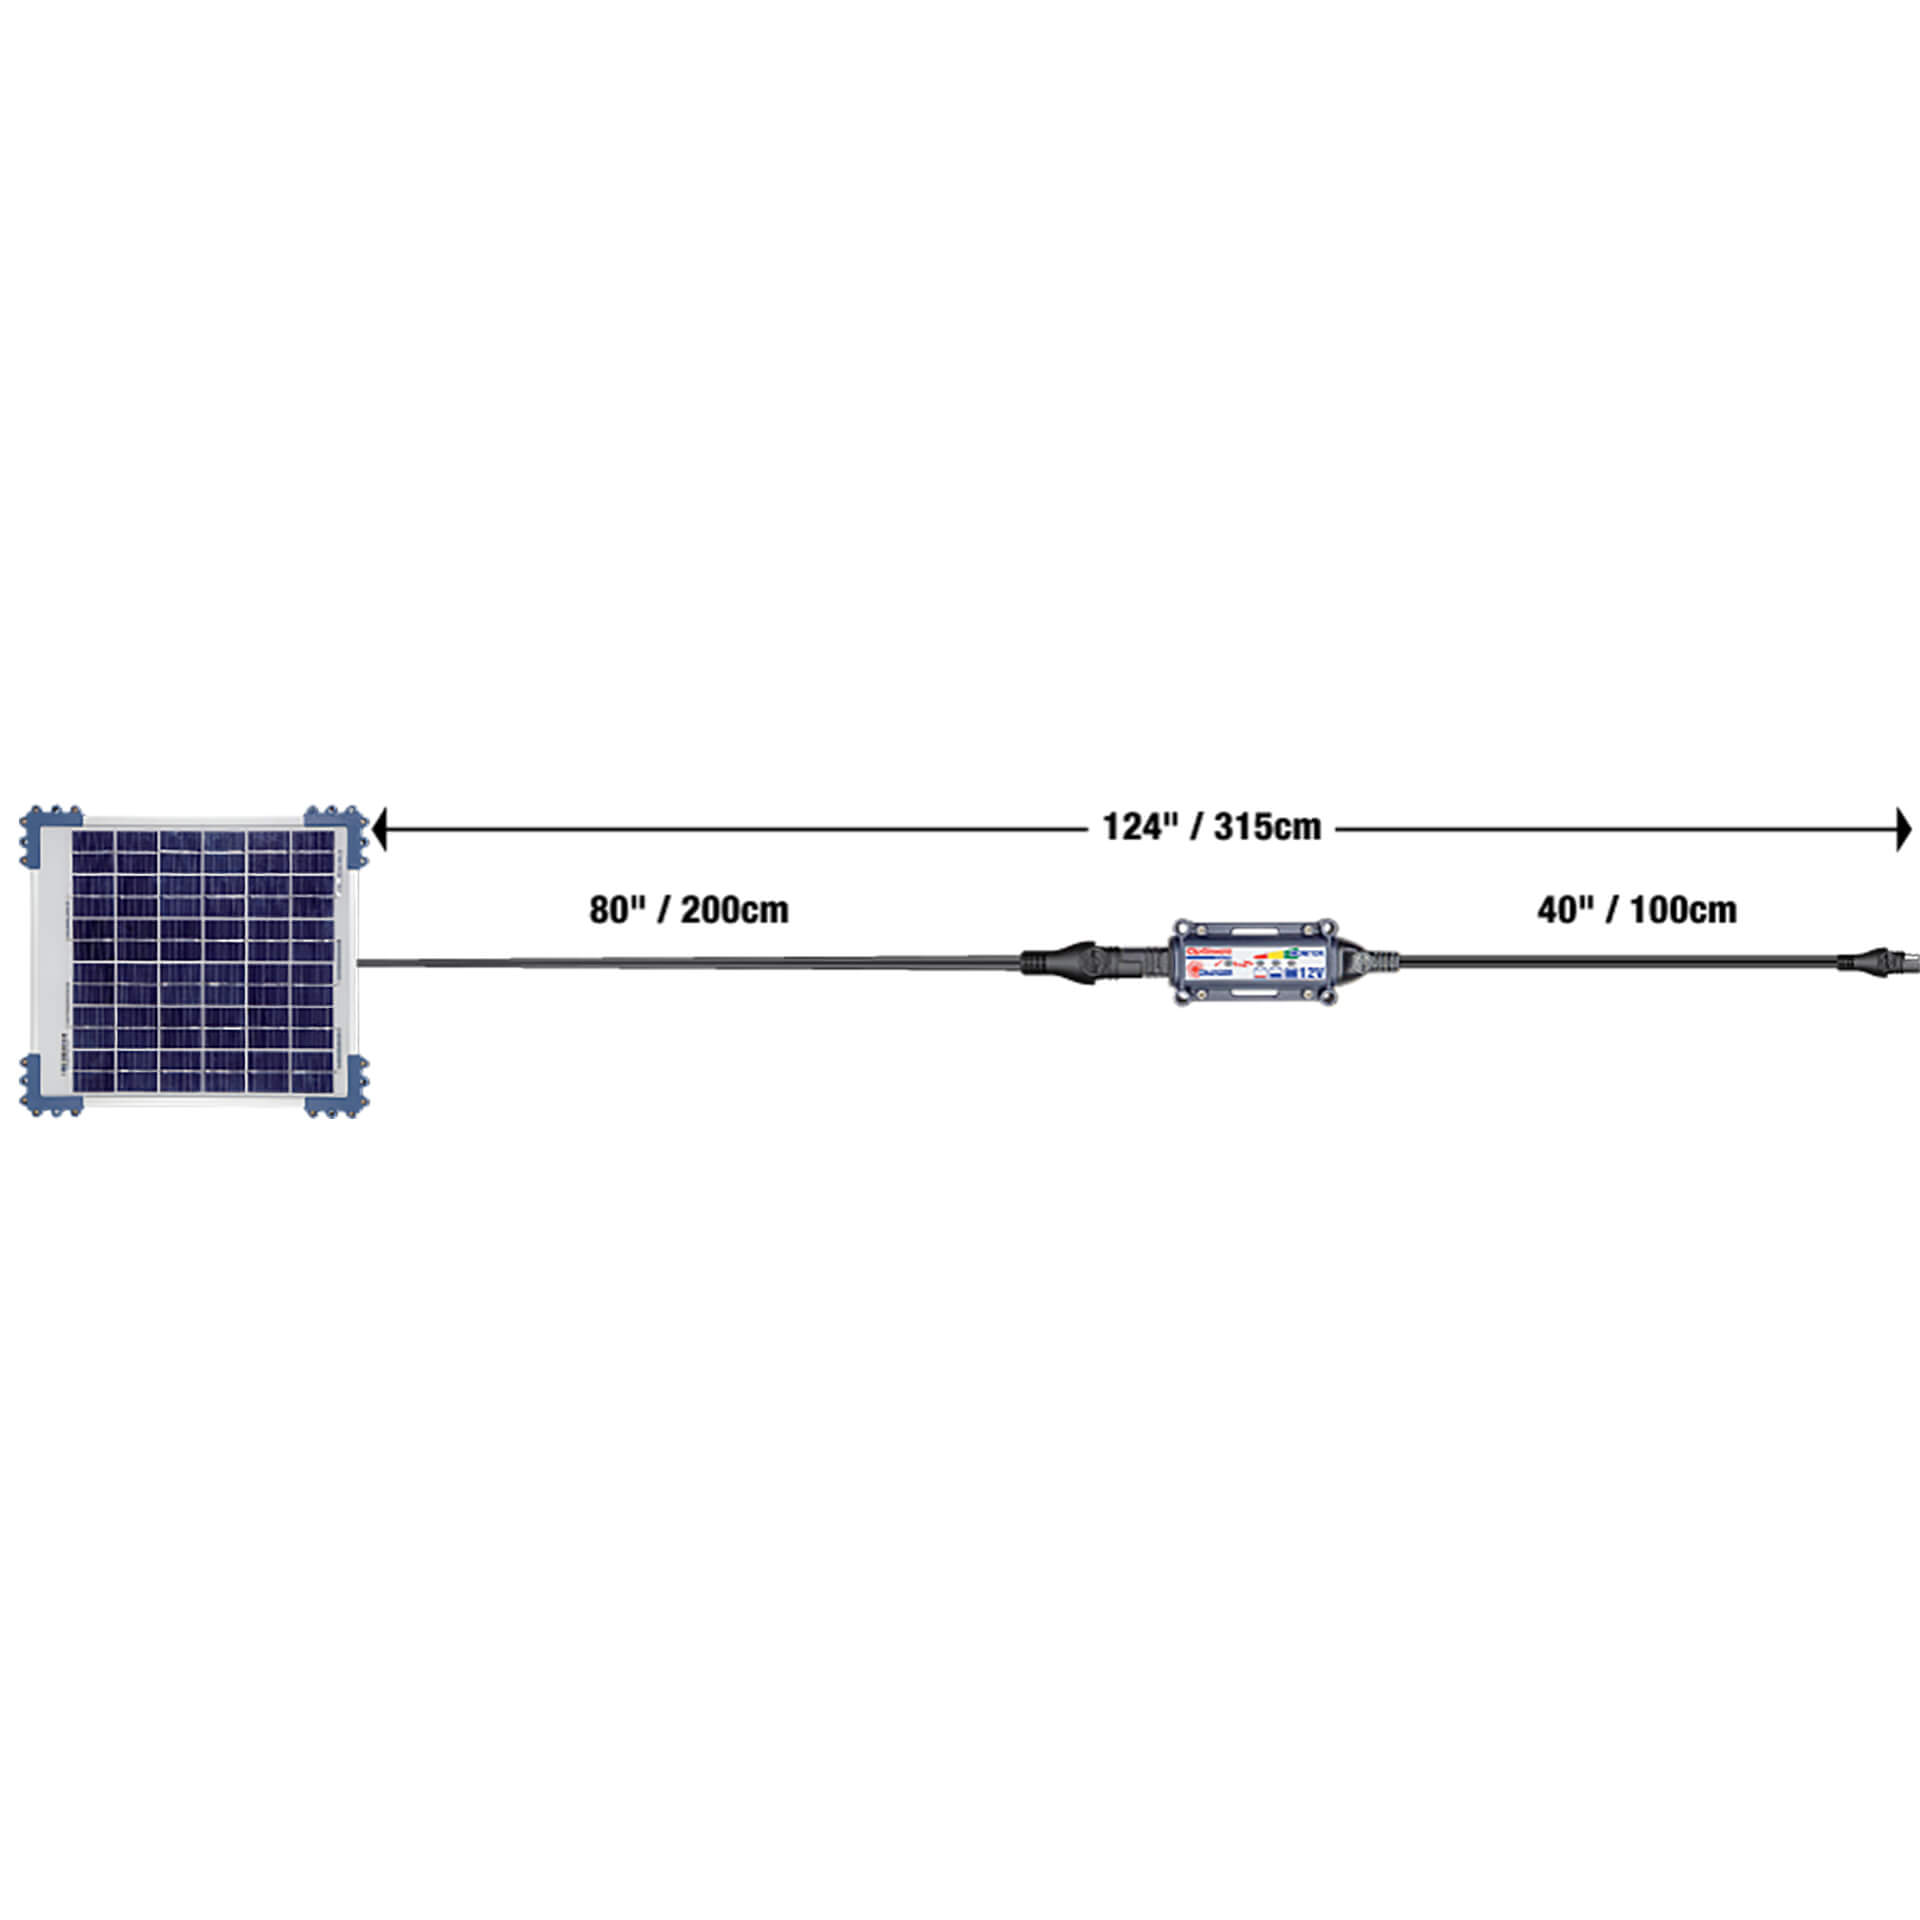 optimate Solar DUO Charger 40 Watt for Lead/GEL/AGM/LFP